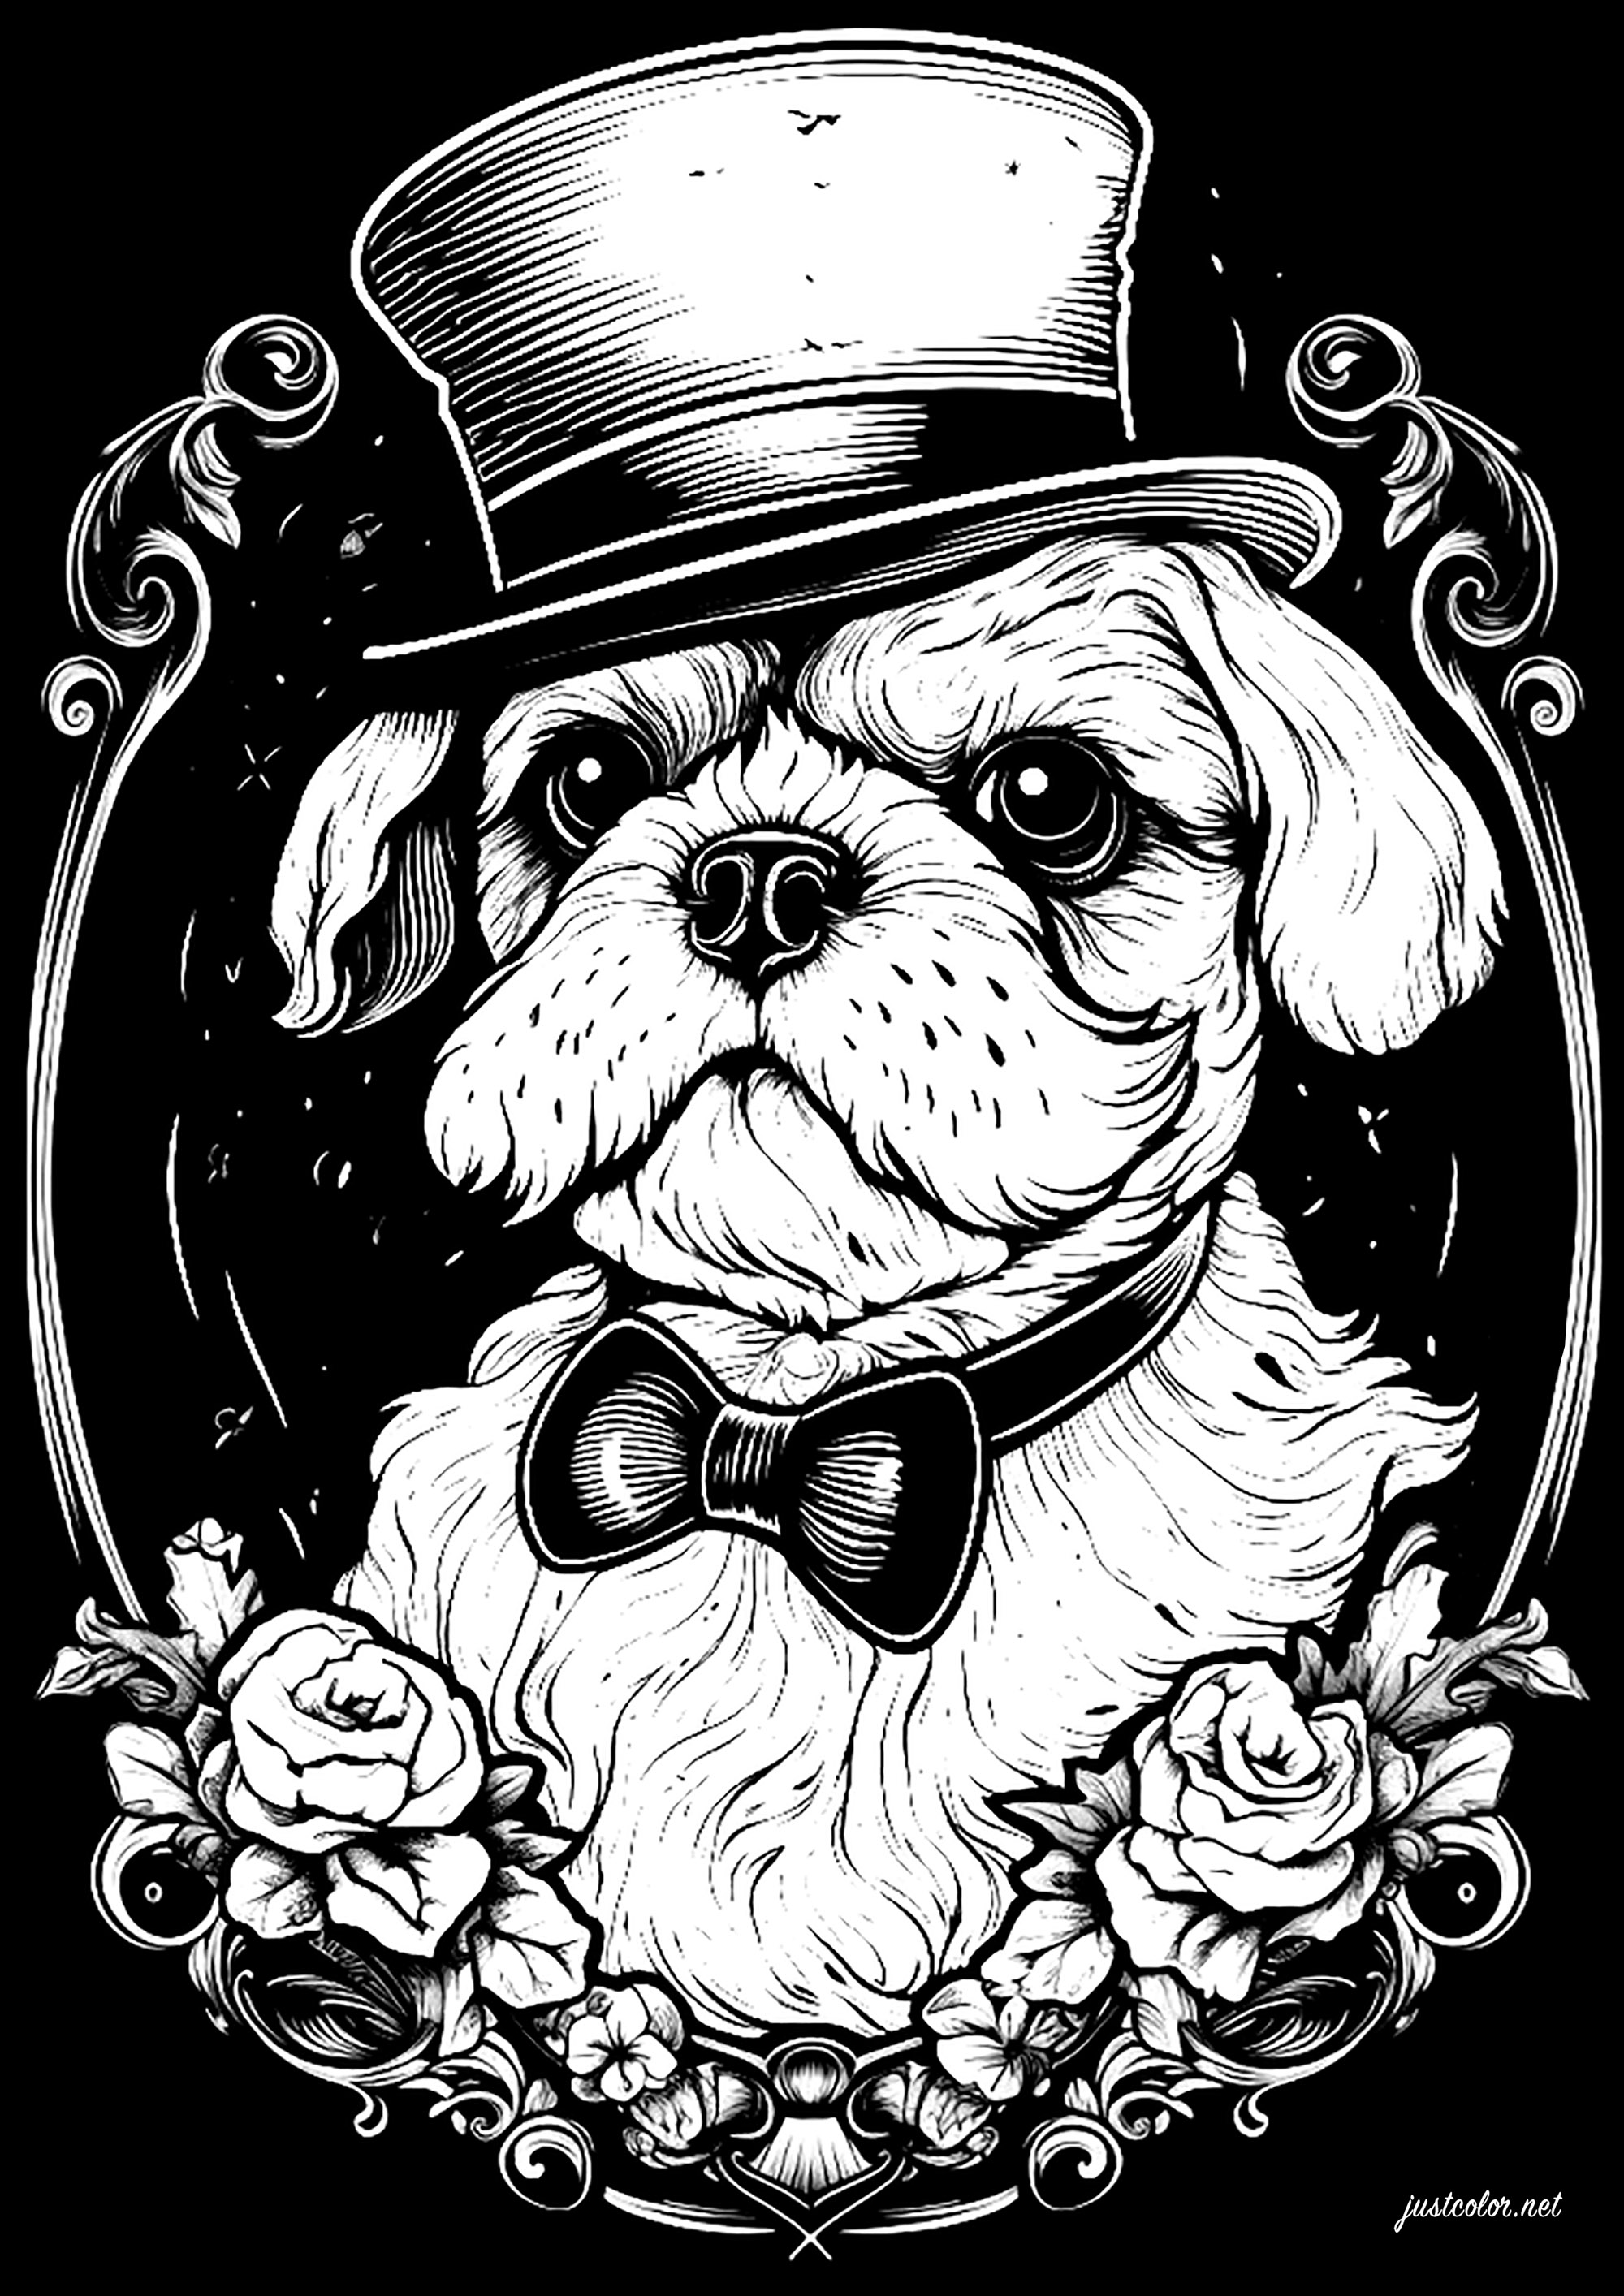 Perro con sombrero. Colorear sobre fondo negro, con un estilo elegante y retro